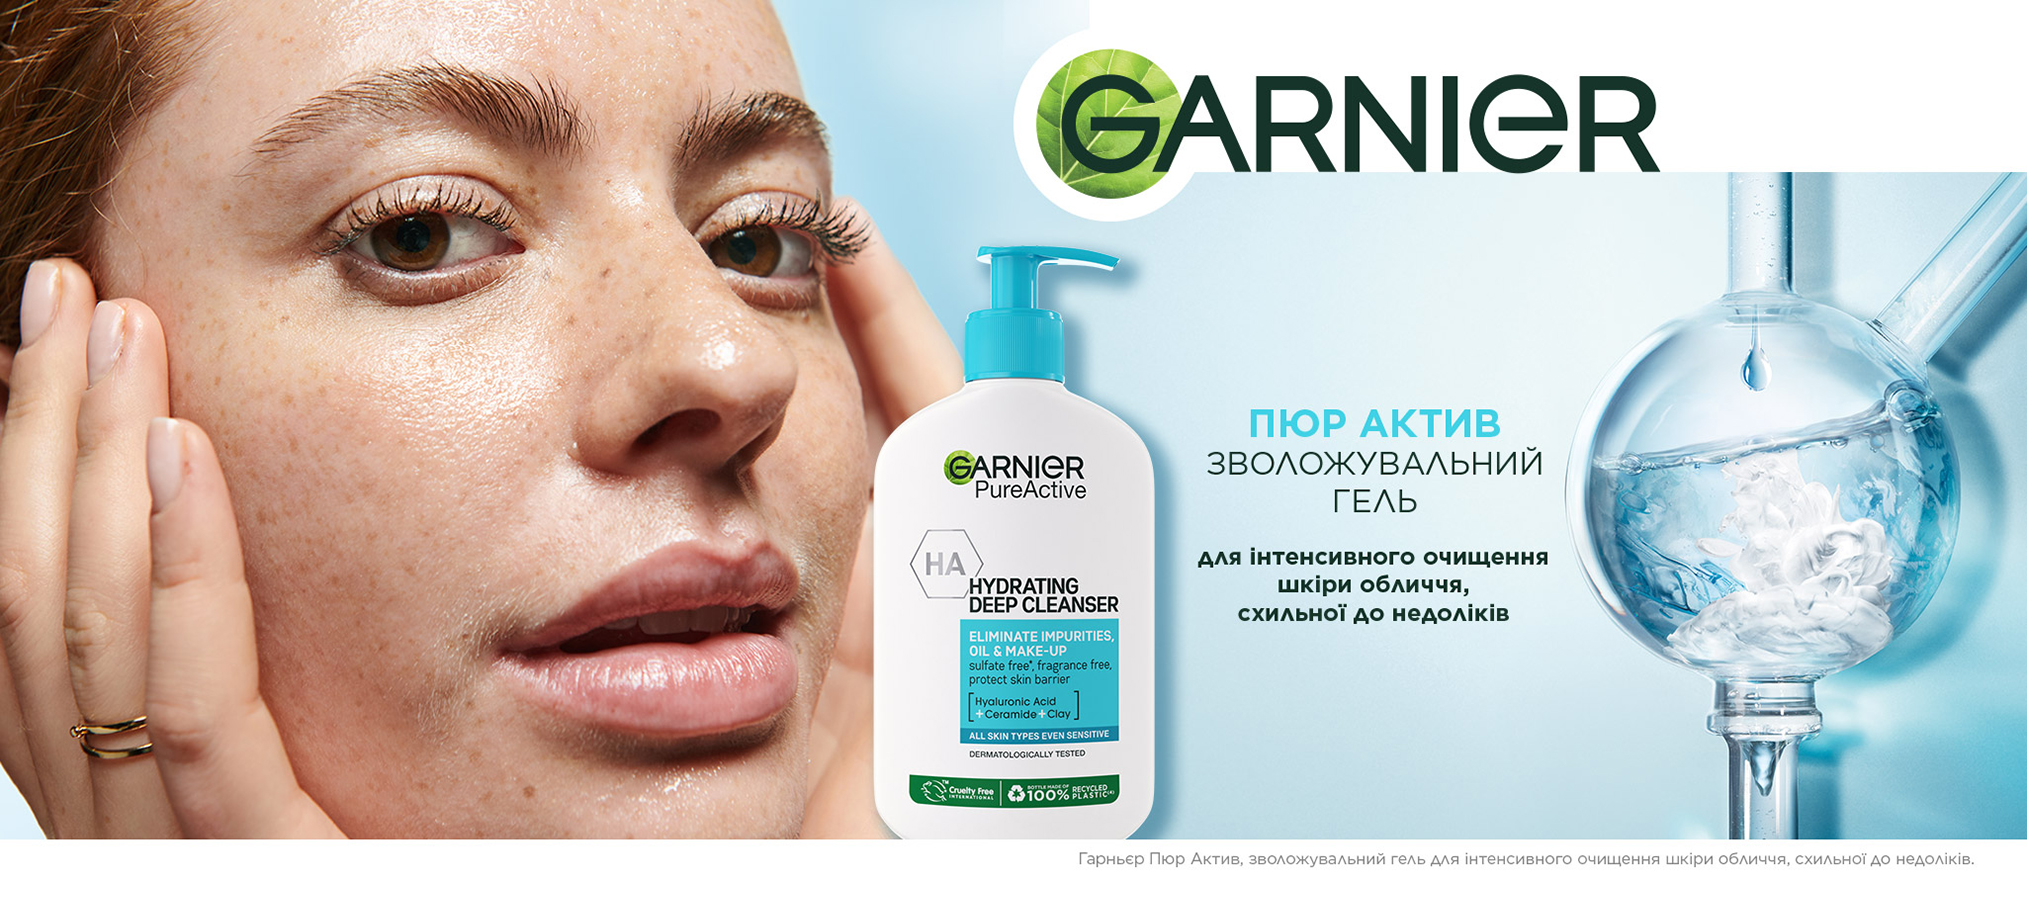 Зволожувальний гель для інтенсивного очищення шкіри обличчя, схильної до недоліків - Garnier Pure Active Hydrating Deep Cleanser